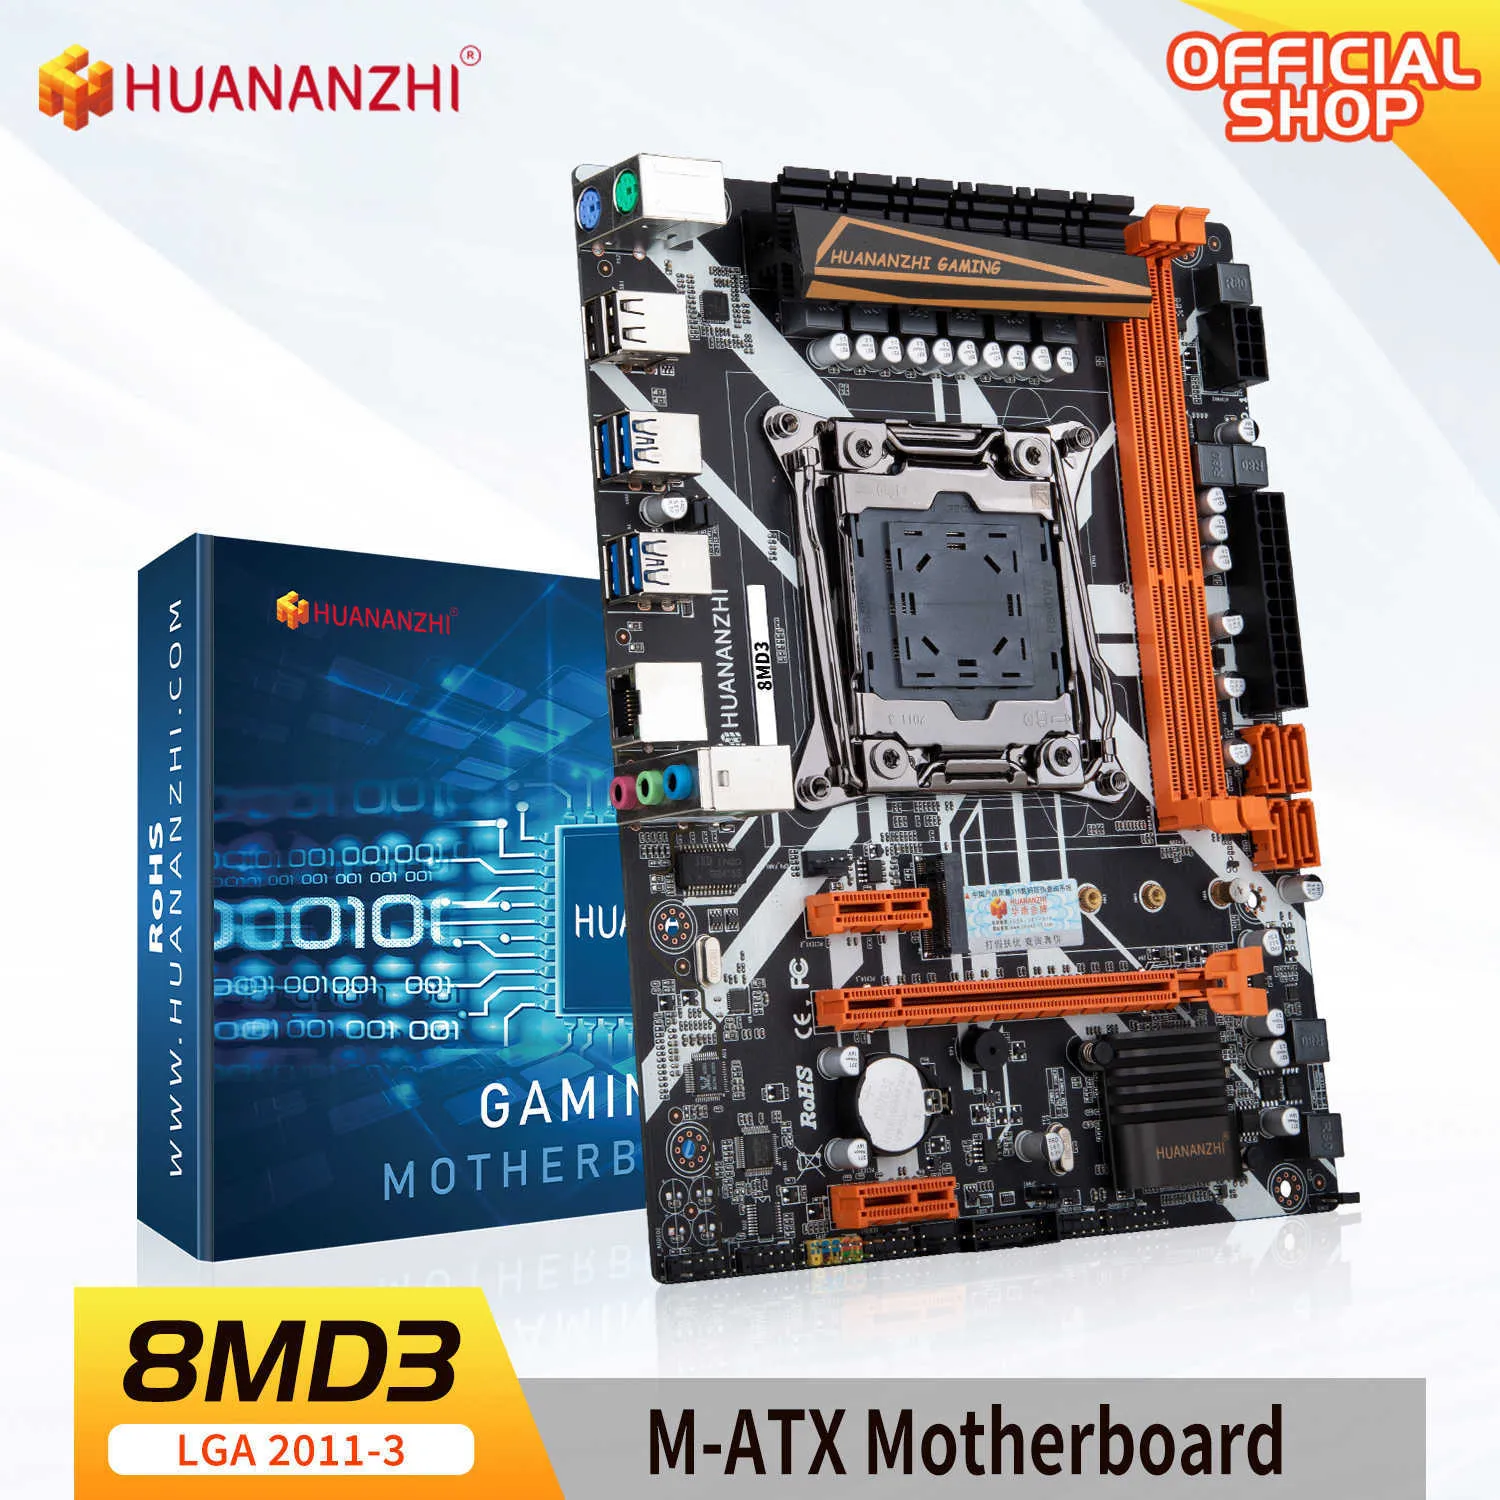 Huananzhi 8M D3 LGA 2011-3 płyta główna Intel Xeon E5 2696 2678 2676 2673 2666 V3 DDR3 RECC Non-ECC pamięć NVME USB3.0 ATX